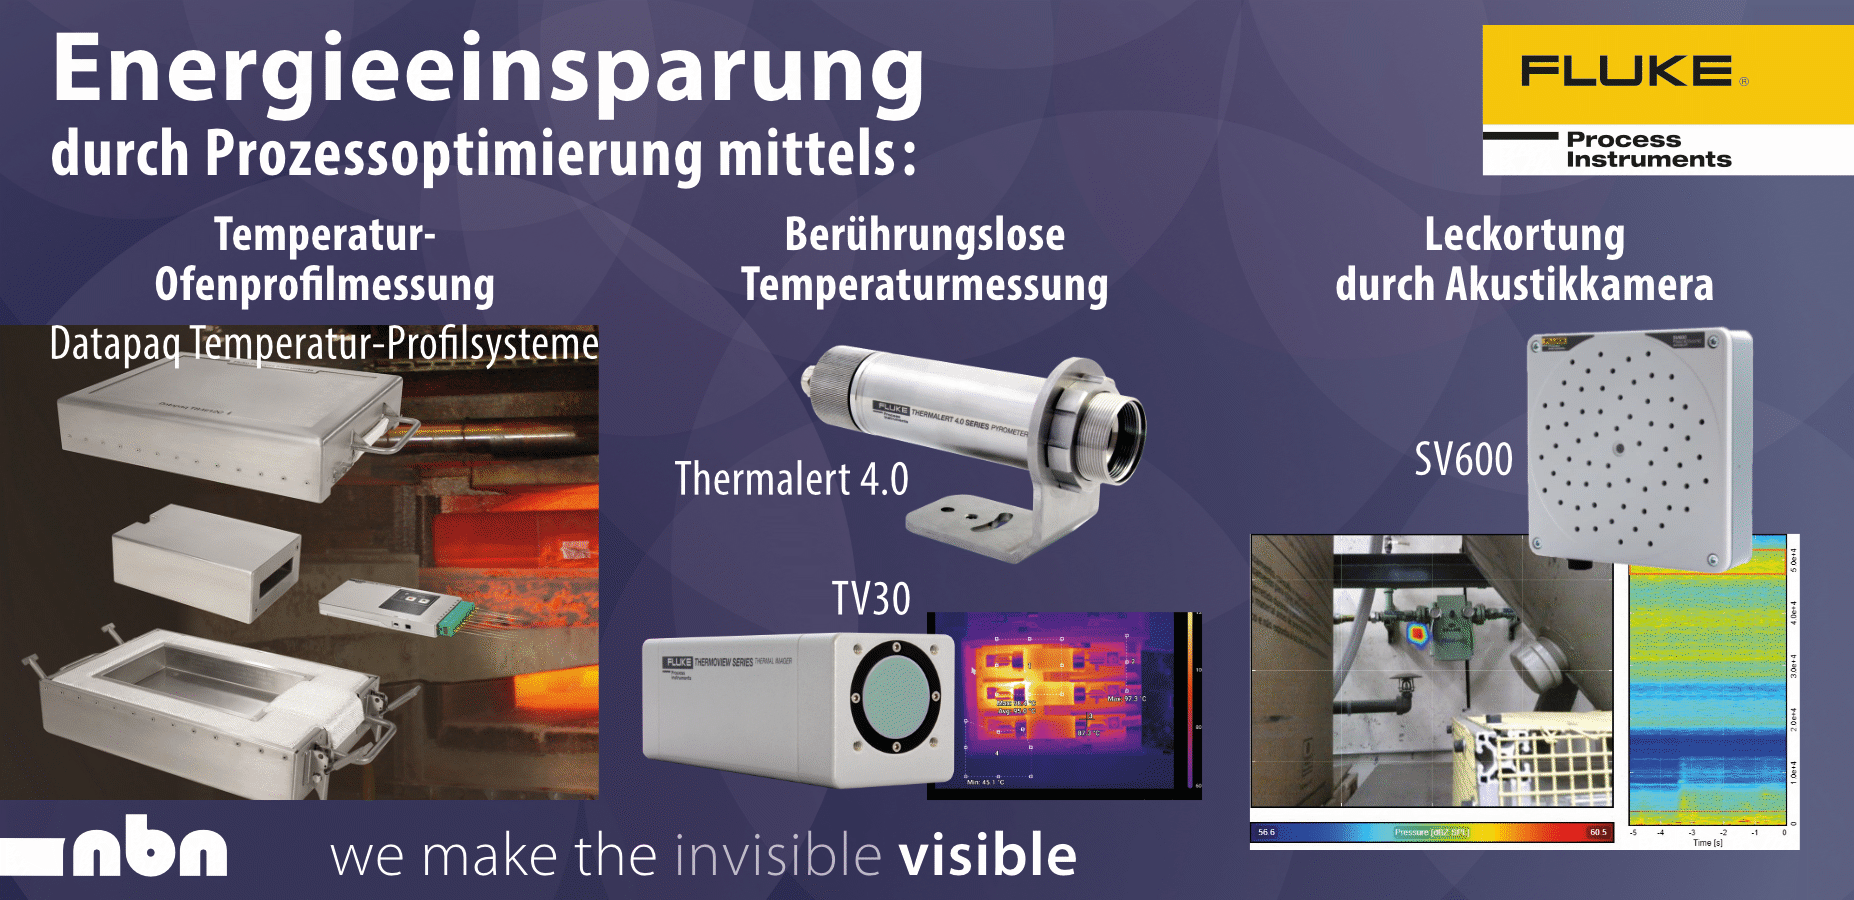 Energieeinsparung durch Prozessoptimierung mittels:
    Temperatur-Ofenprofilmessung,
    Berührungslose Temperaturmessung,
    Leckortung durch Akustikkamera.